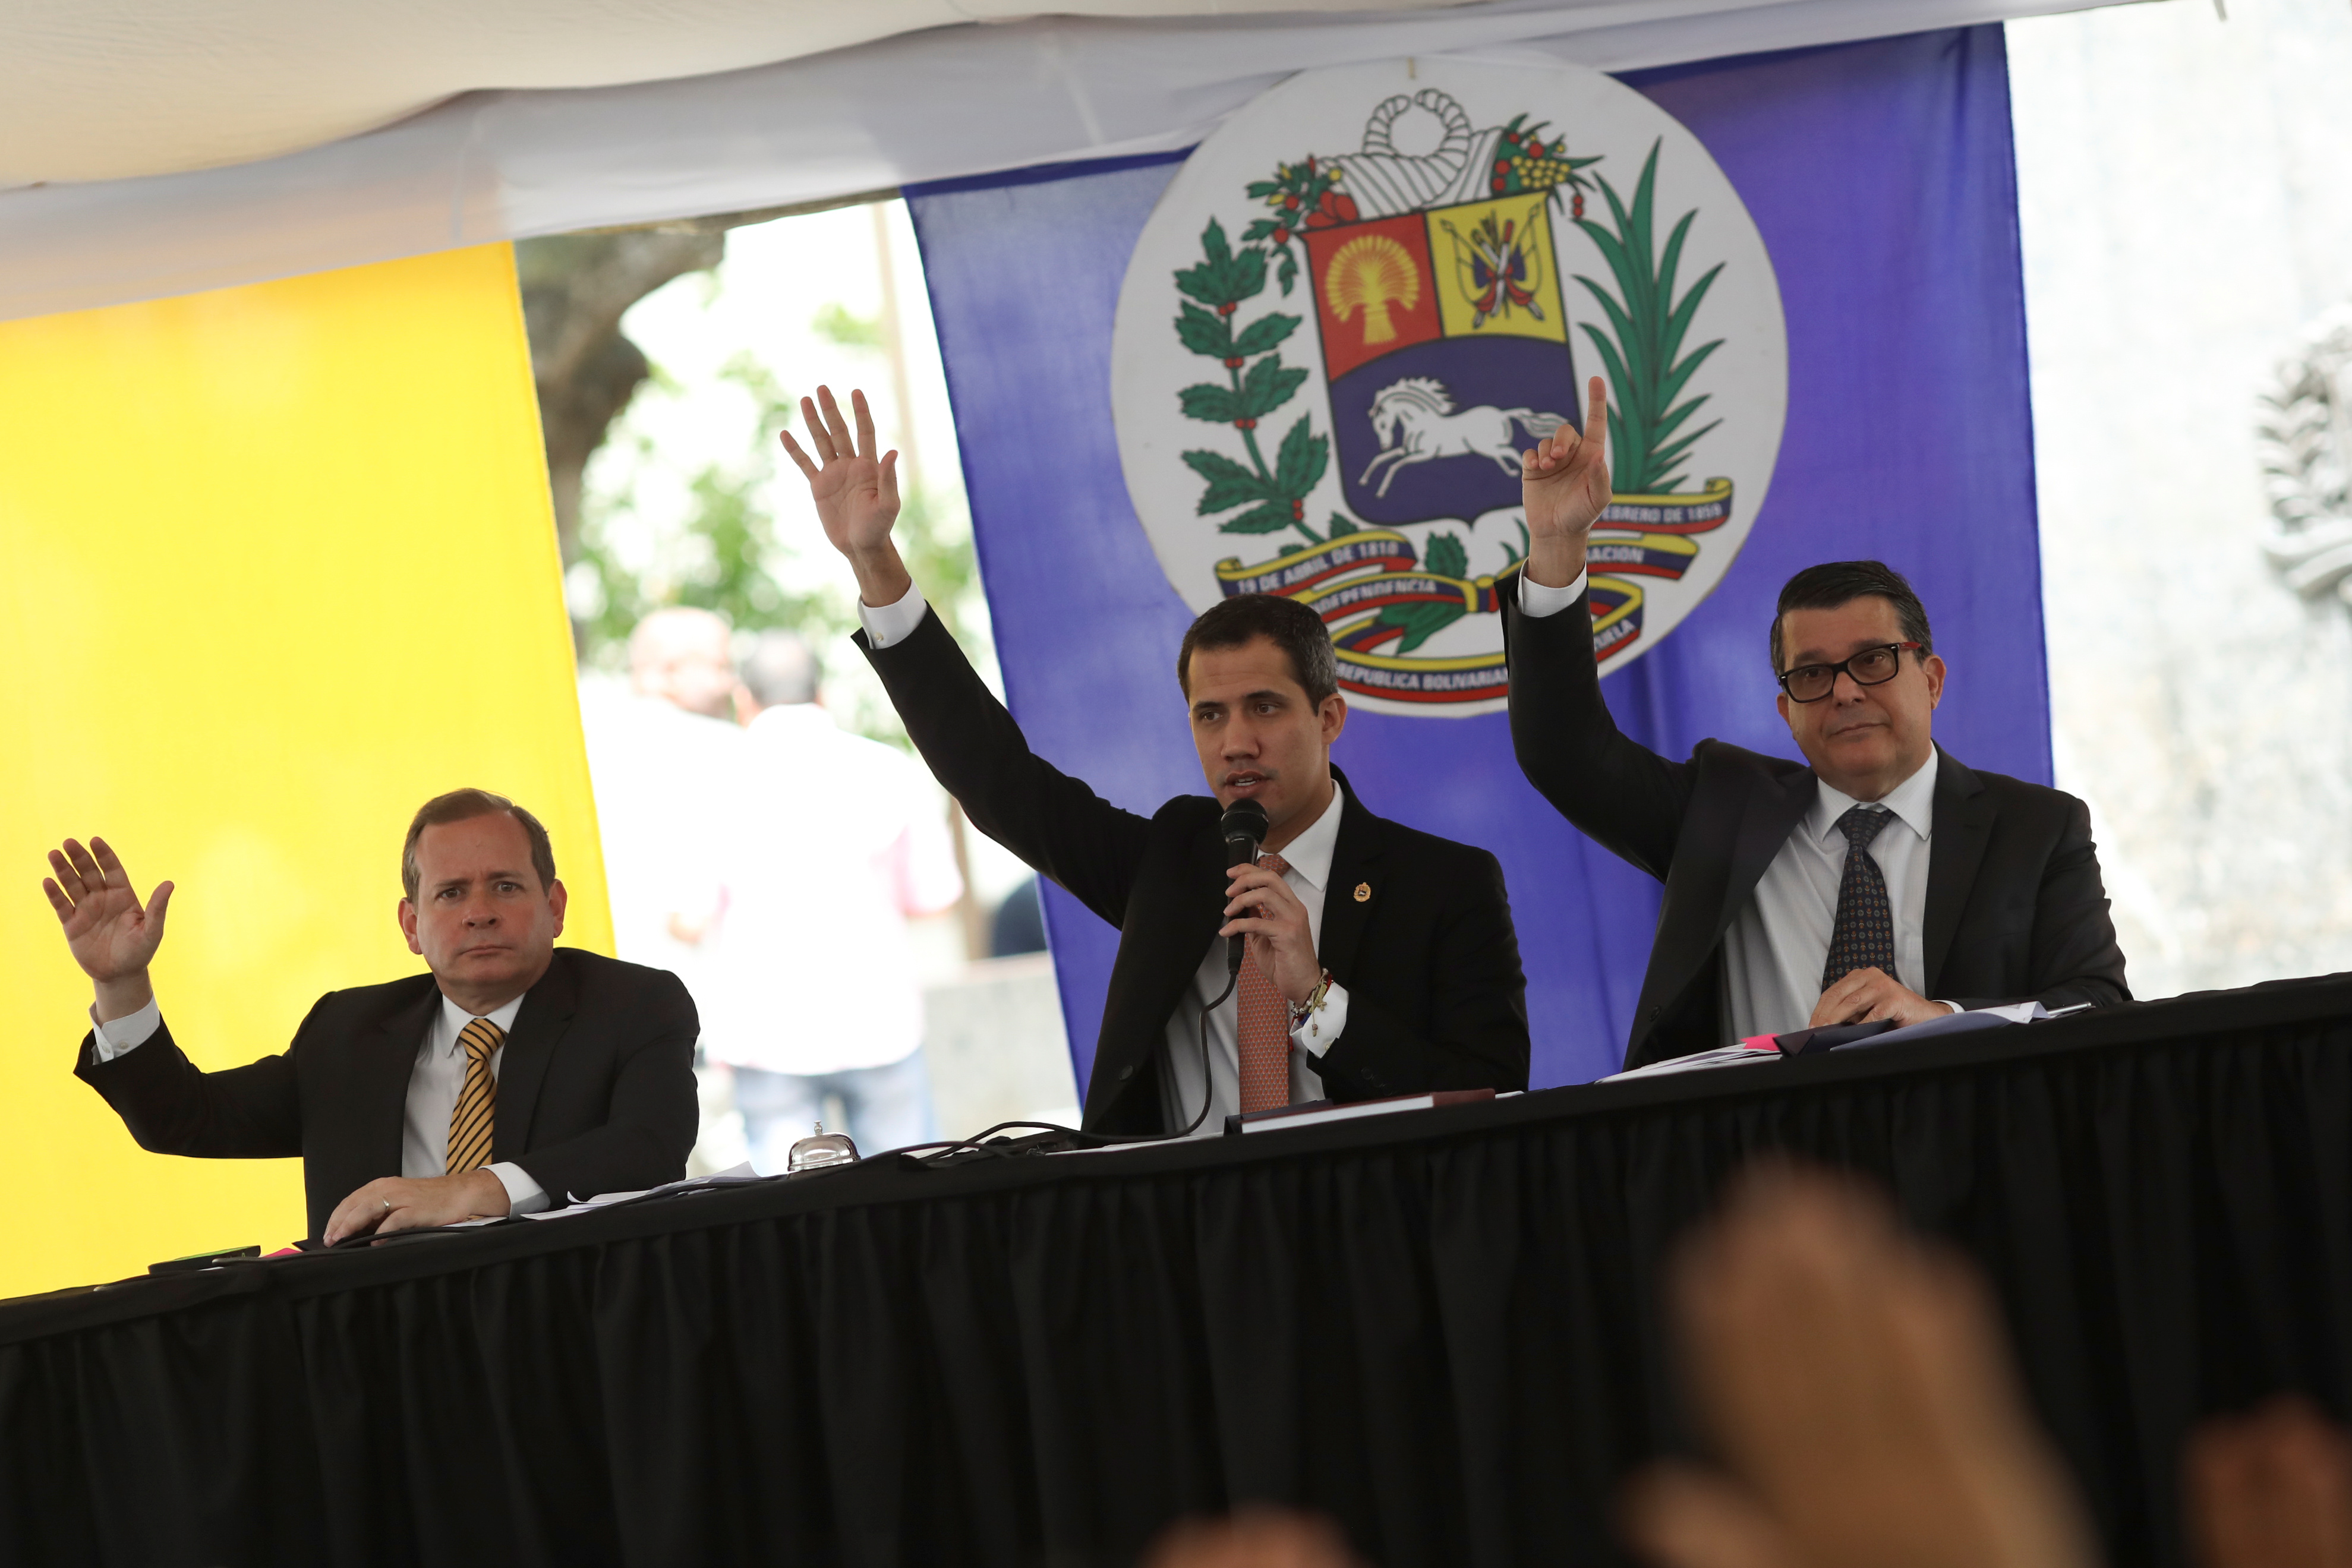 AN debatió sobre la violación sistemática de DDHH por parte del régimen de Maduro #1Oct